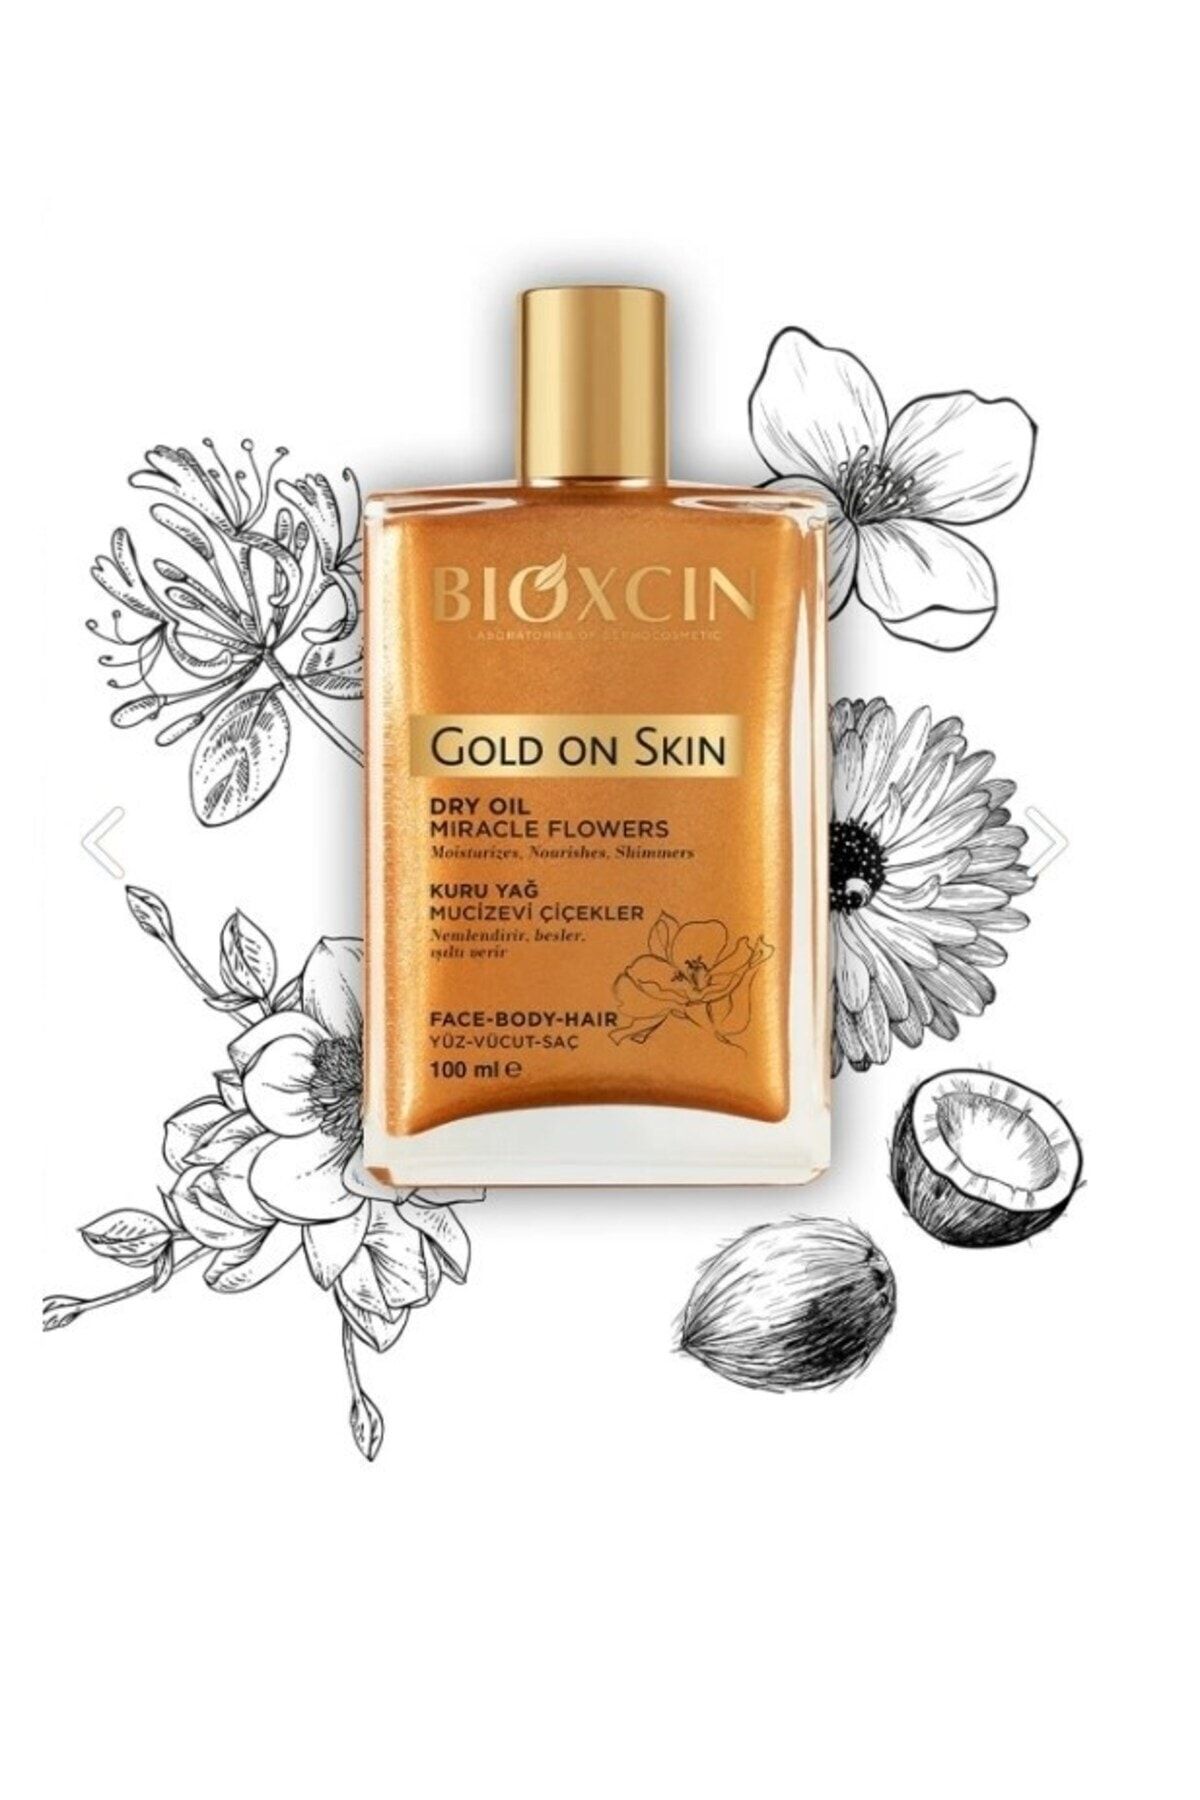 Bioxcin Gold On Skin Altın Parıltılı Kuru Yağ 100 Ml - Dry Oil Saç Yüz Vücut 8680512632955